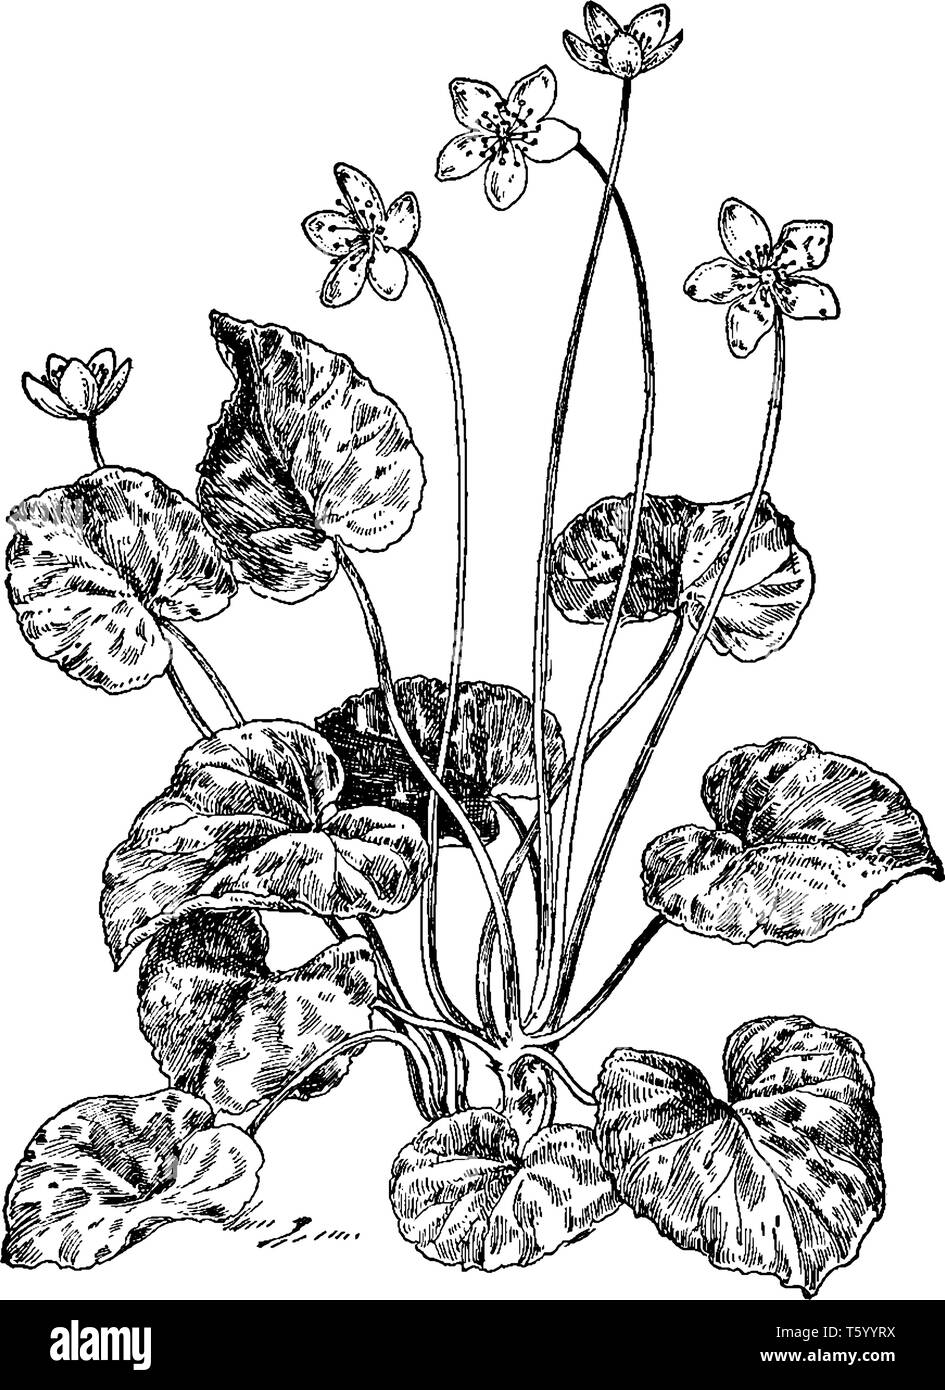 Ein Bild von einem Dalibarda Repens. Dies ist aus der Familie der Rosaceae. Die Blätter sind herzförmig. Die Blüten sind klein und die angeschlossenen einzudämmen. Die Stiele sind Stock Vektor